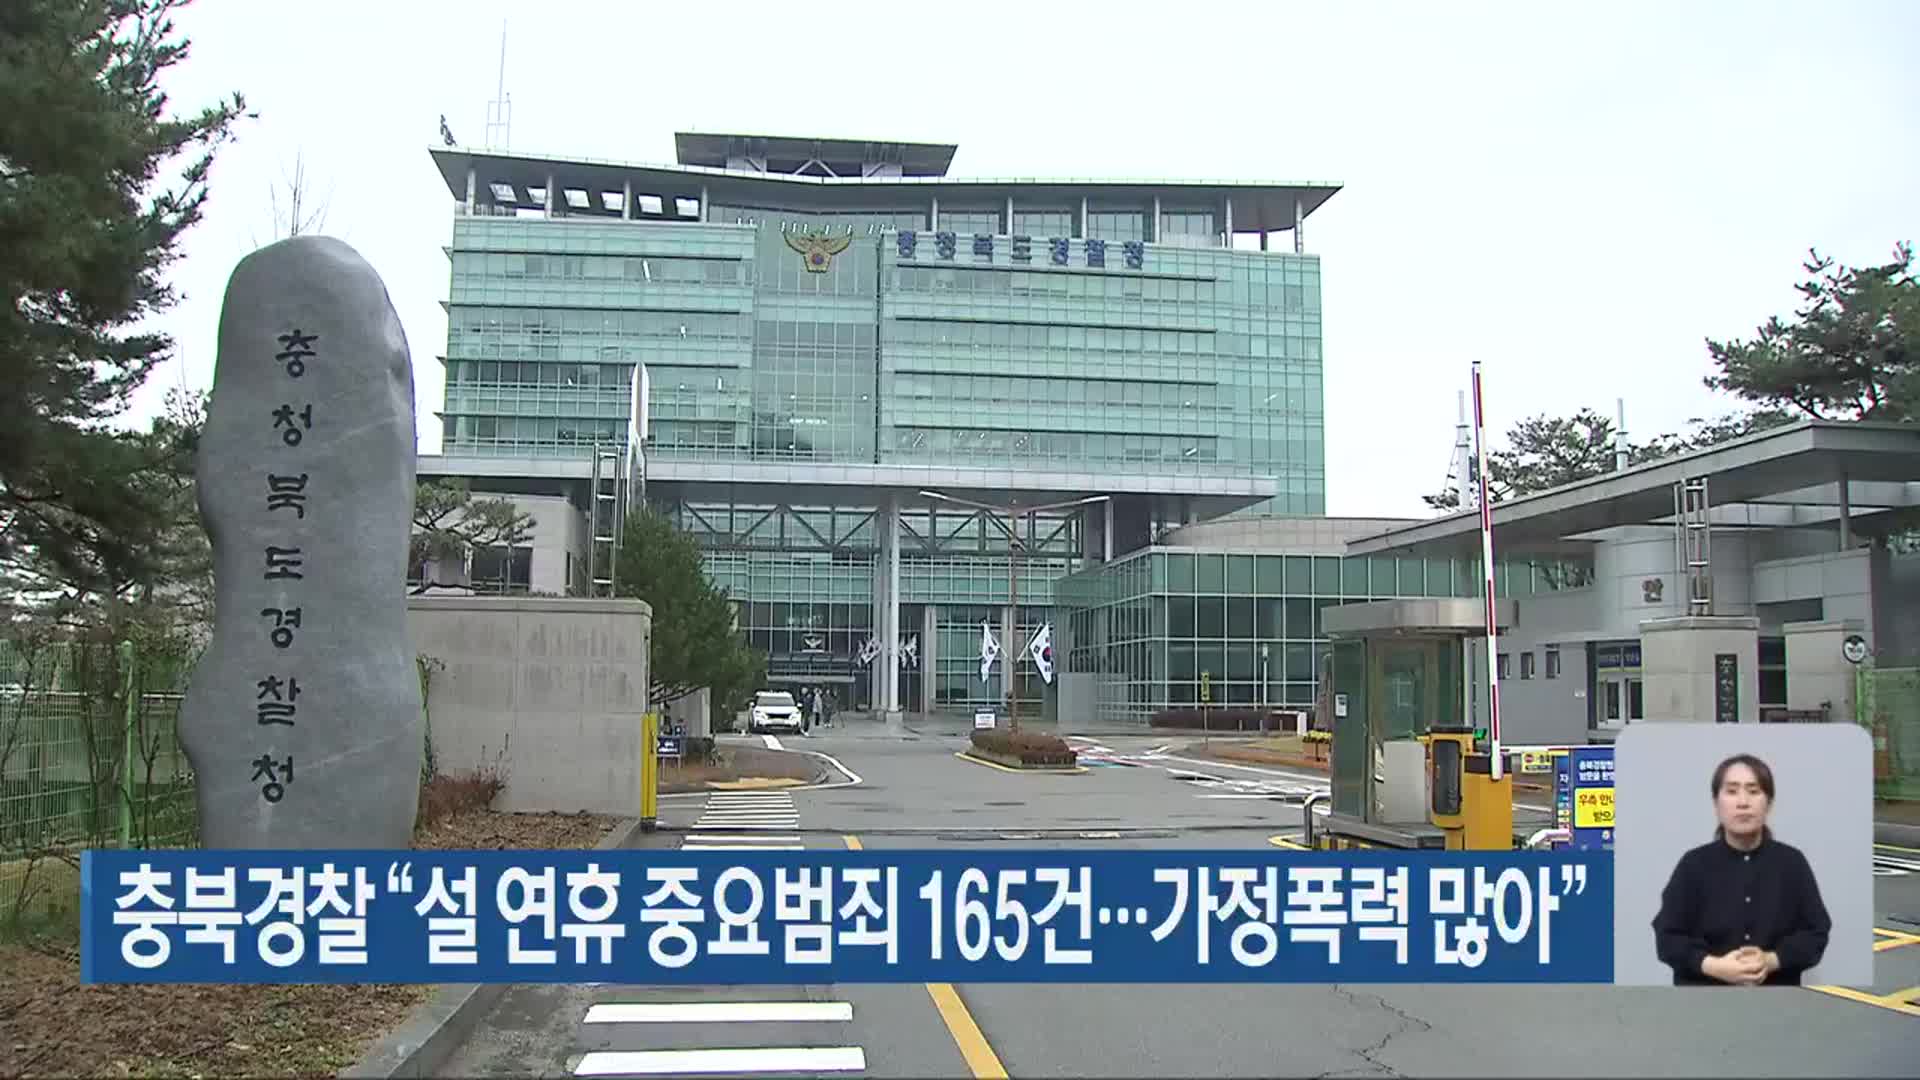 충북경찰 “설 연휴 중요범죄 165건…가정폭력 많아”